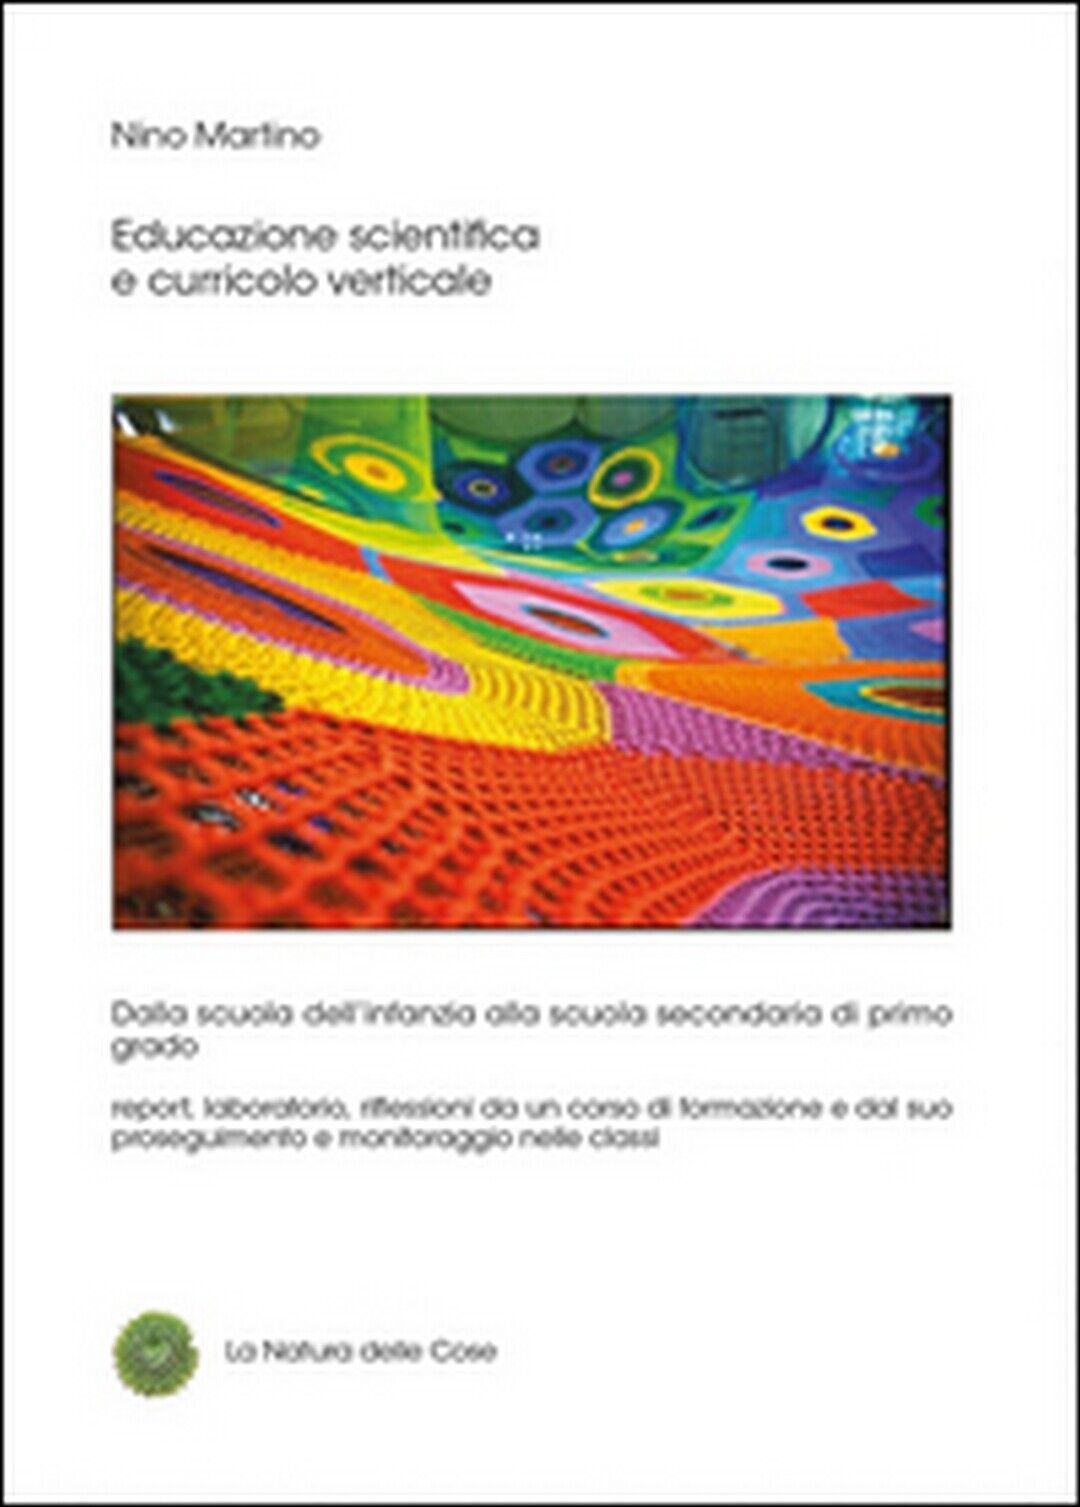 Educazione scientifica e curricolo verticale  - Nino Martino,  2015,  Youcanprin libro usato